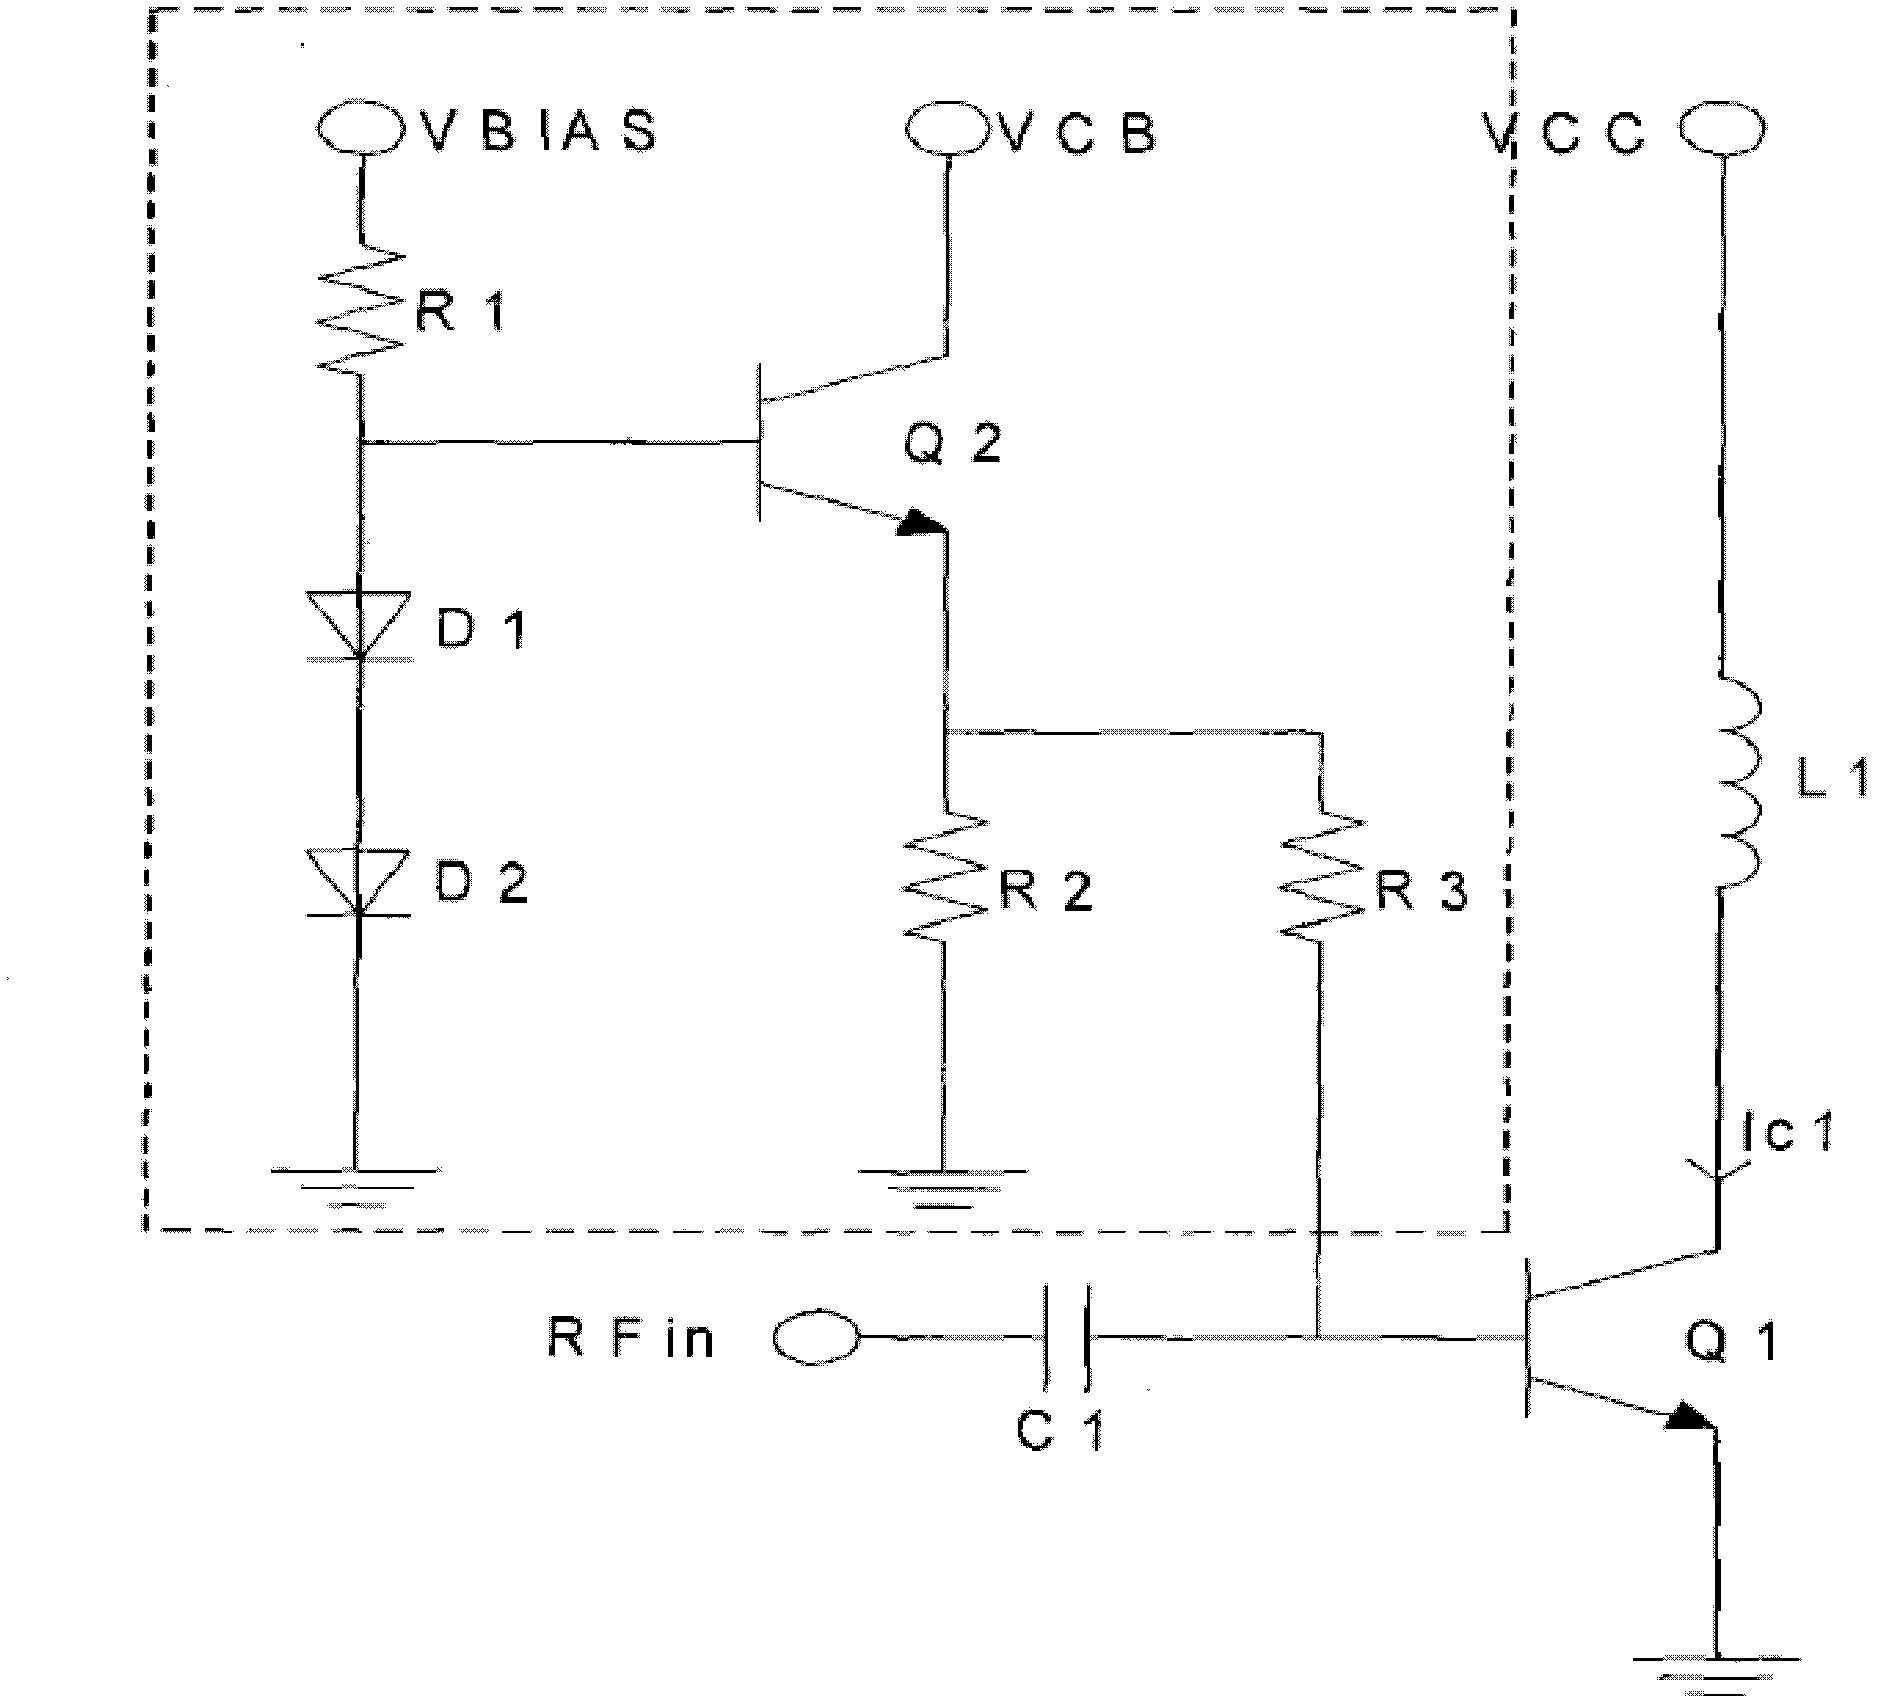 Biasing circuit of power amplifier